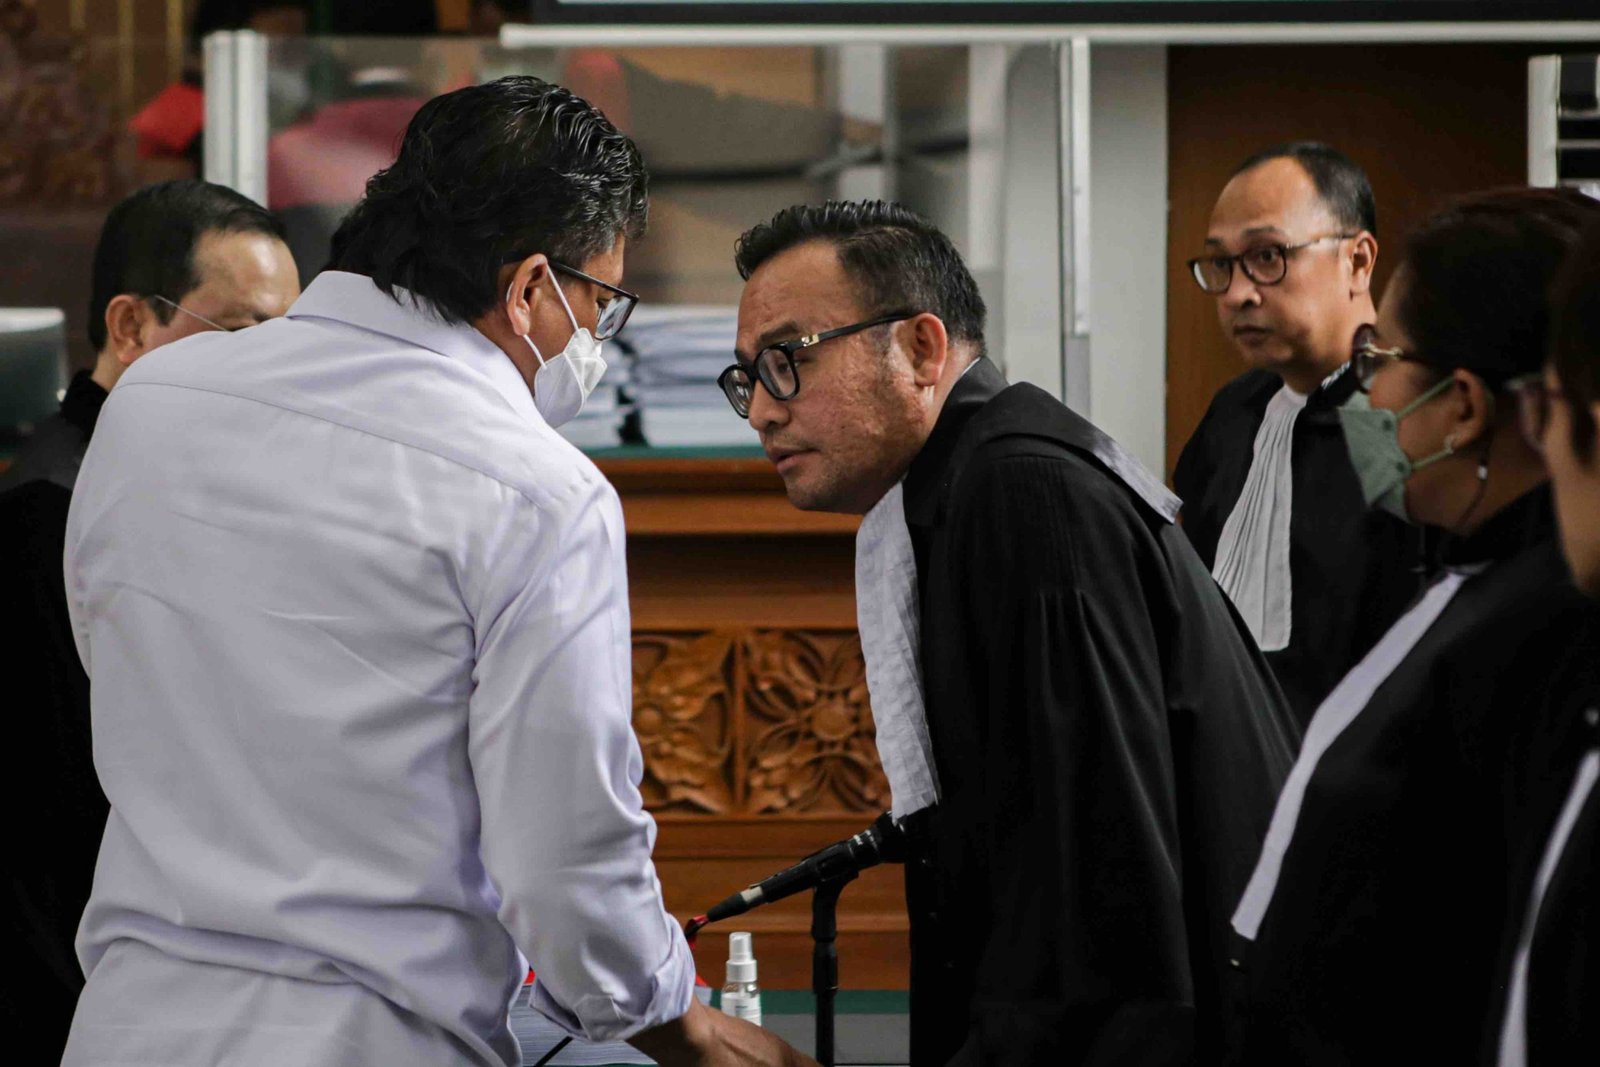 Terdakwa kasus pembunuhan berencana terhadap Nofriansyah Yousa Hutabarat atau Brigadir J, Ferdy Sambo (kiri) berbincang dengan tim penasehat hukum usai mendengarkan pembacaan tuntutan dari Jaksa Penuntut Umum di PN Jaksel, Selasa (17/1/2023). (Foto: ANTARA)